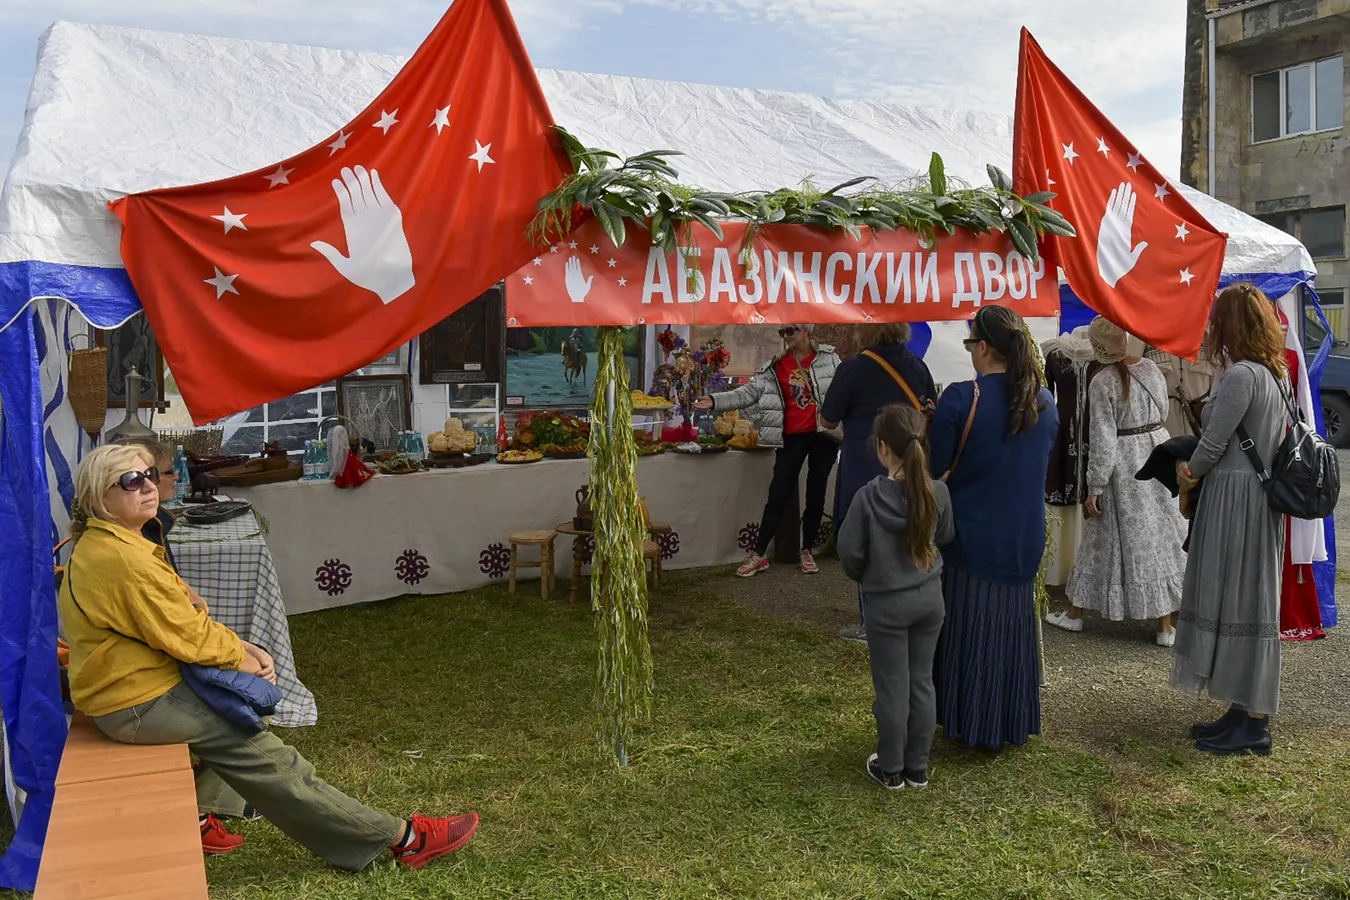 Lykhnashta's Harvest Festival, Abkhazia